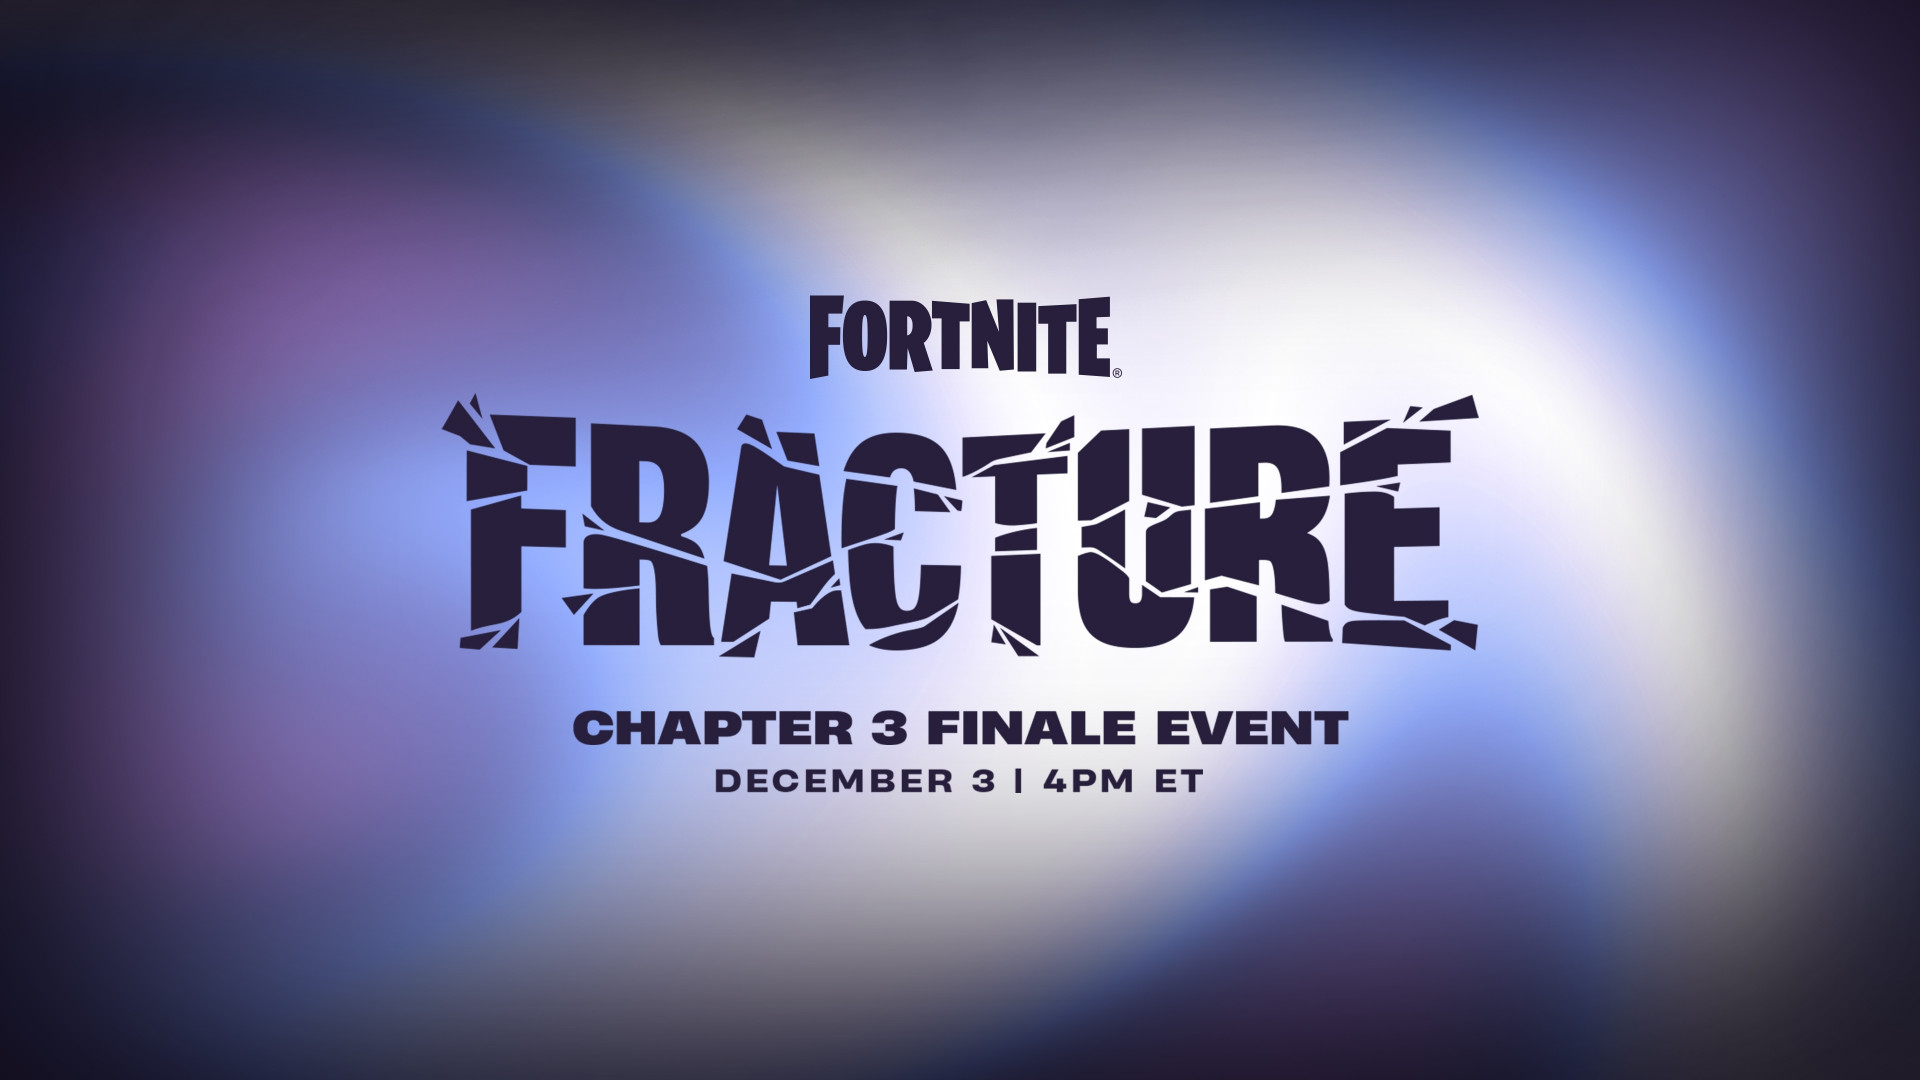 Объявлена дата старта финального события третьей главы Fortnite